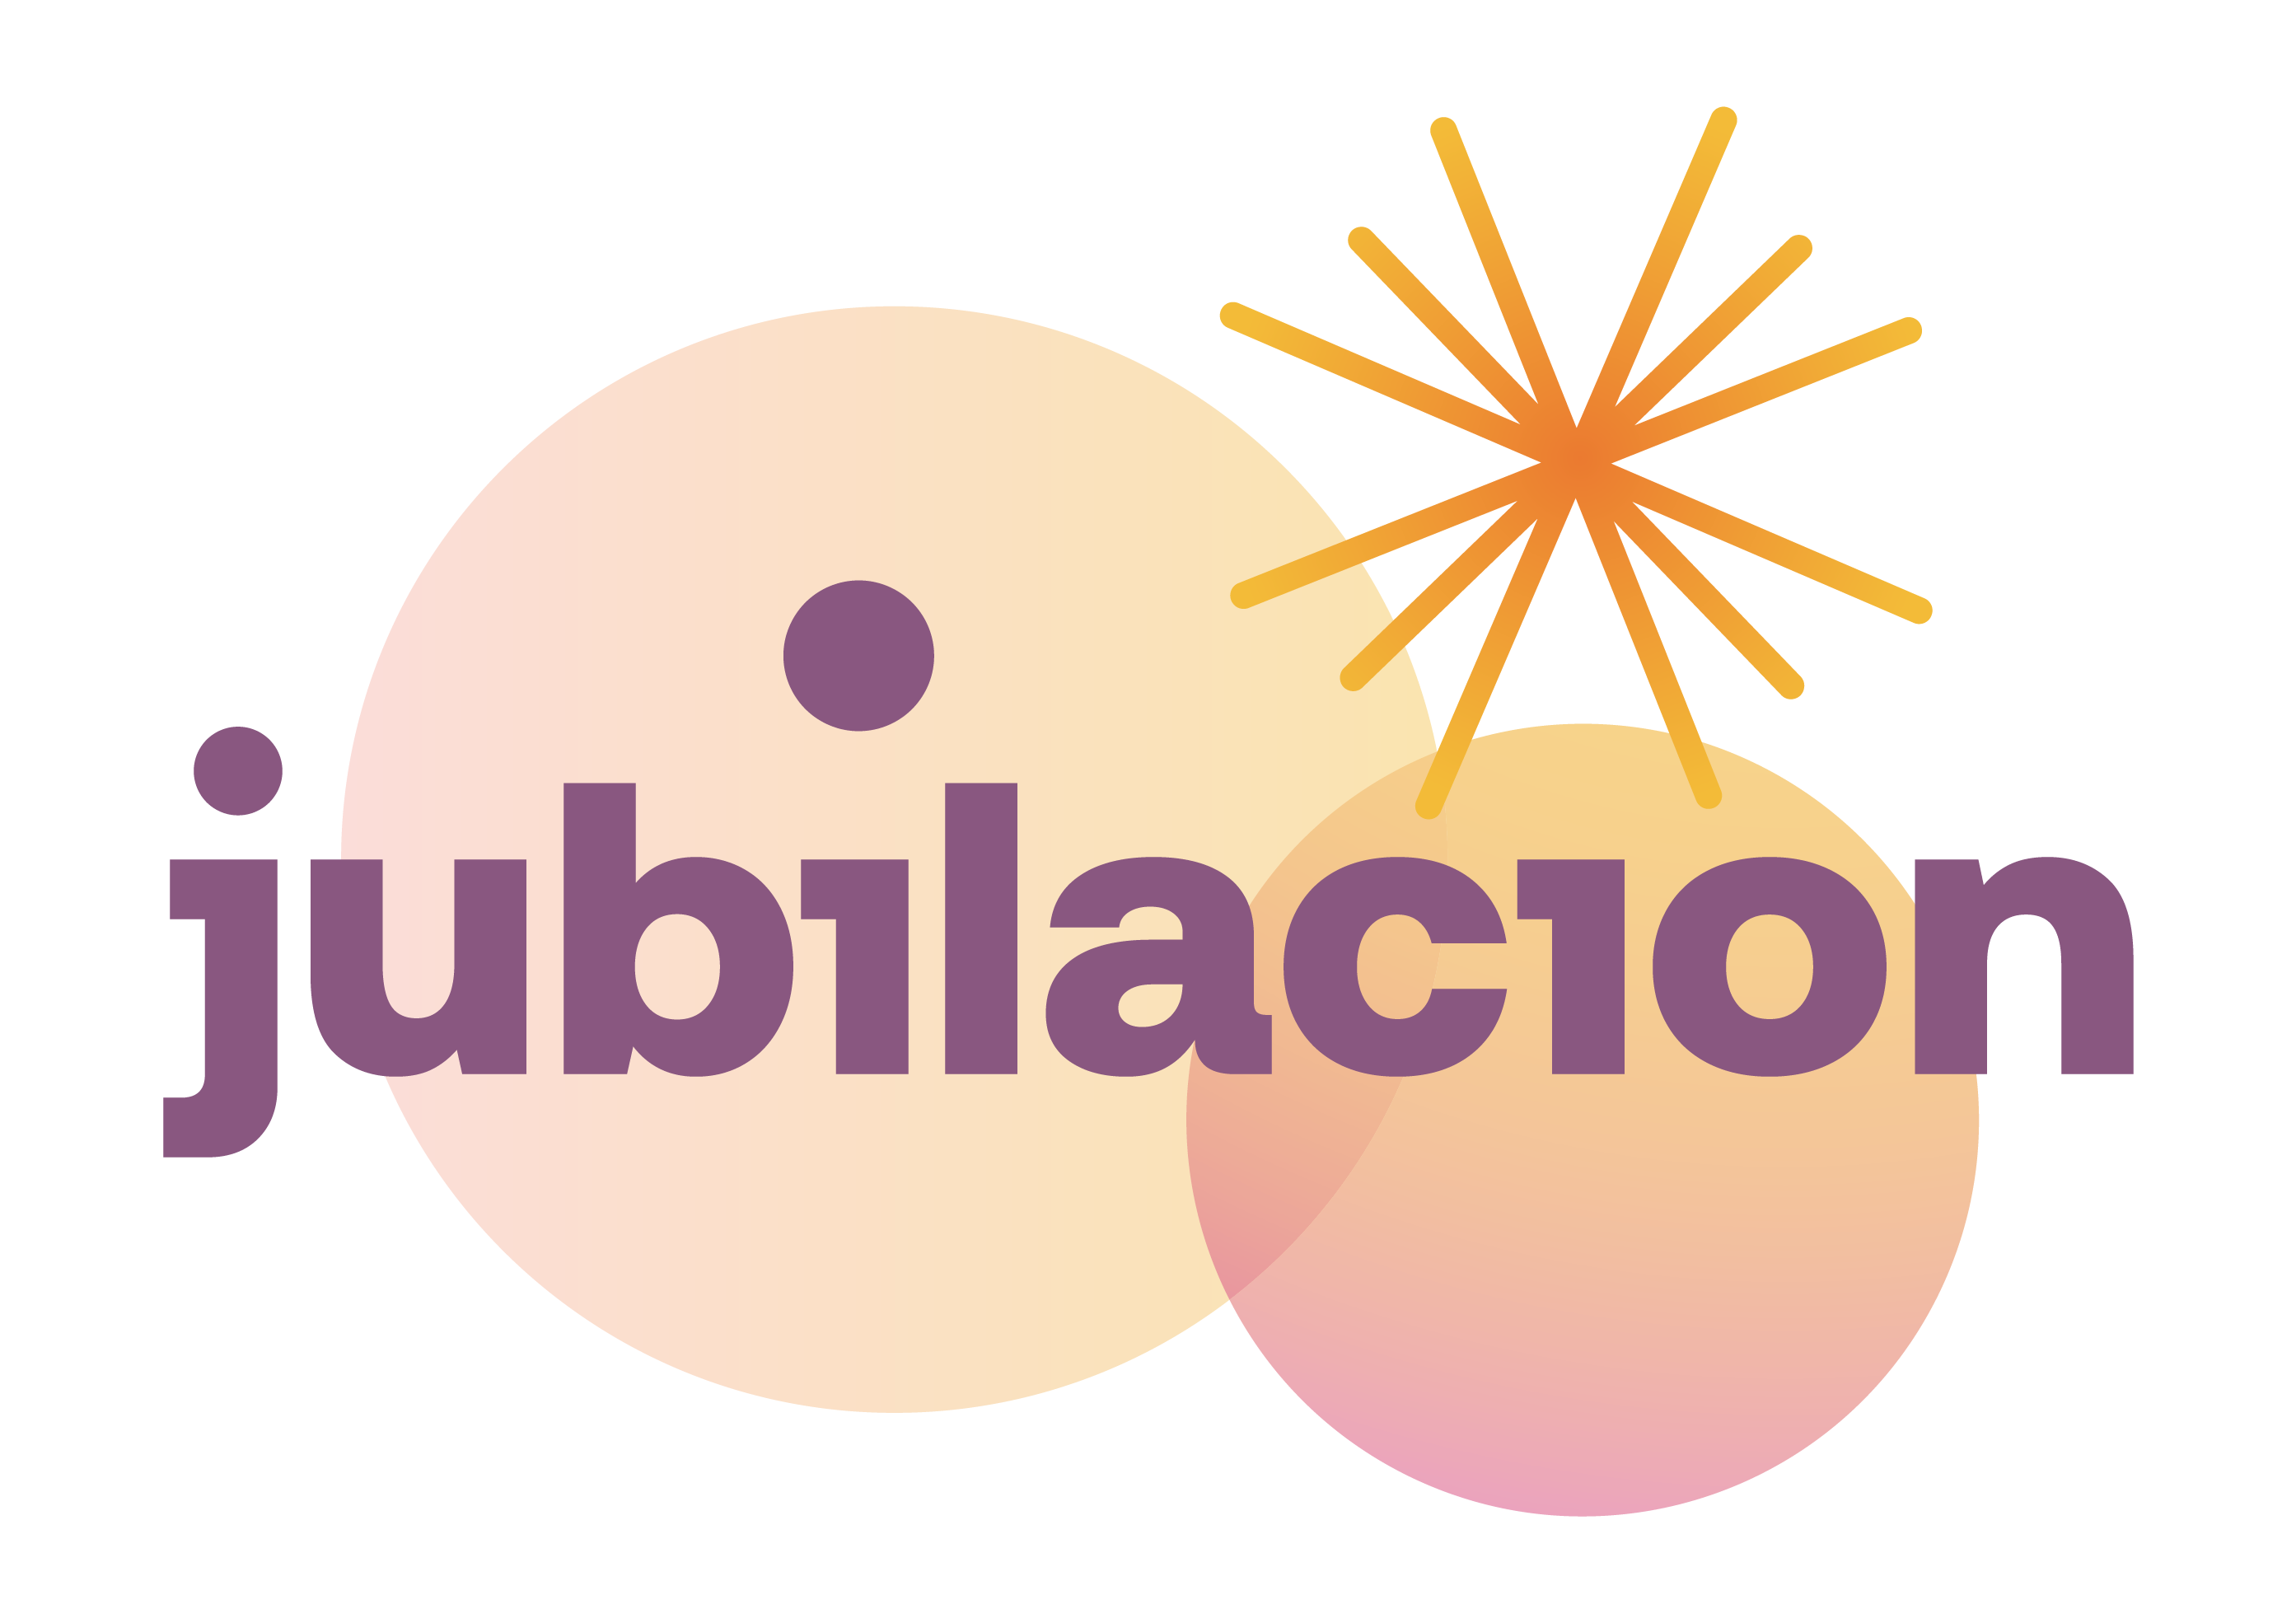 Jubilacion logo